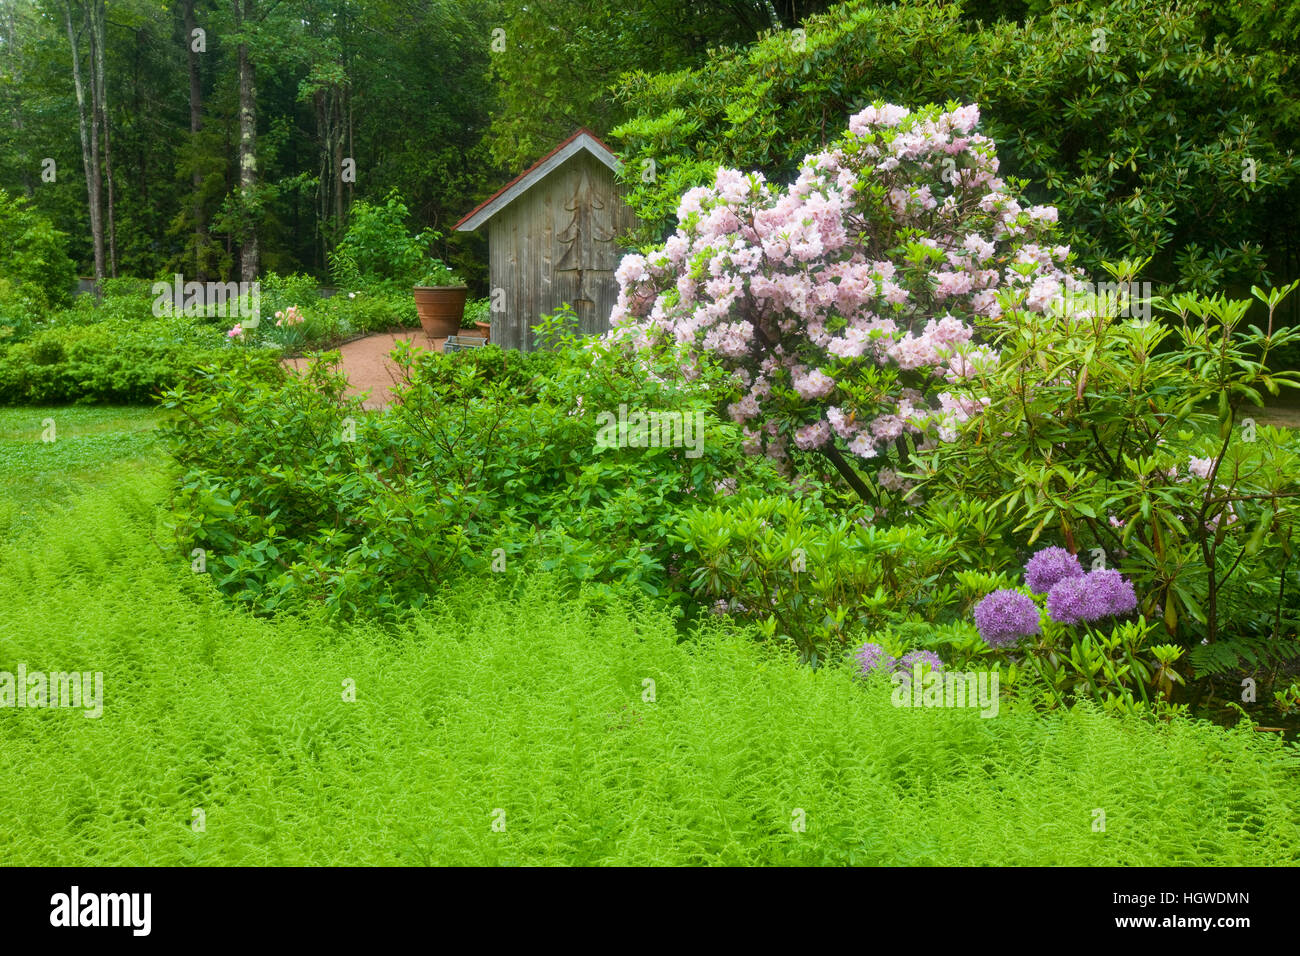 Thuya Gardens in Northeast Harbor, Maine. Stock Photo